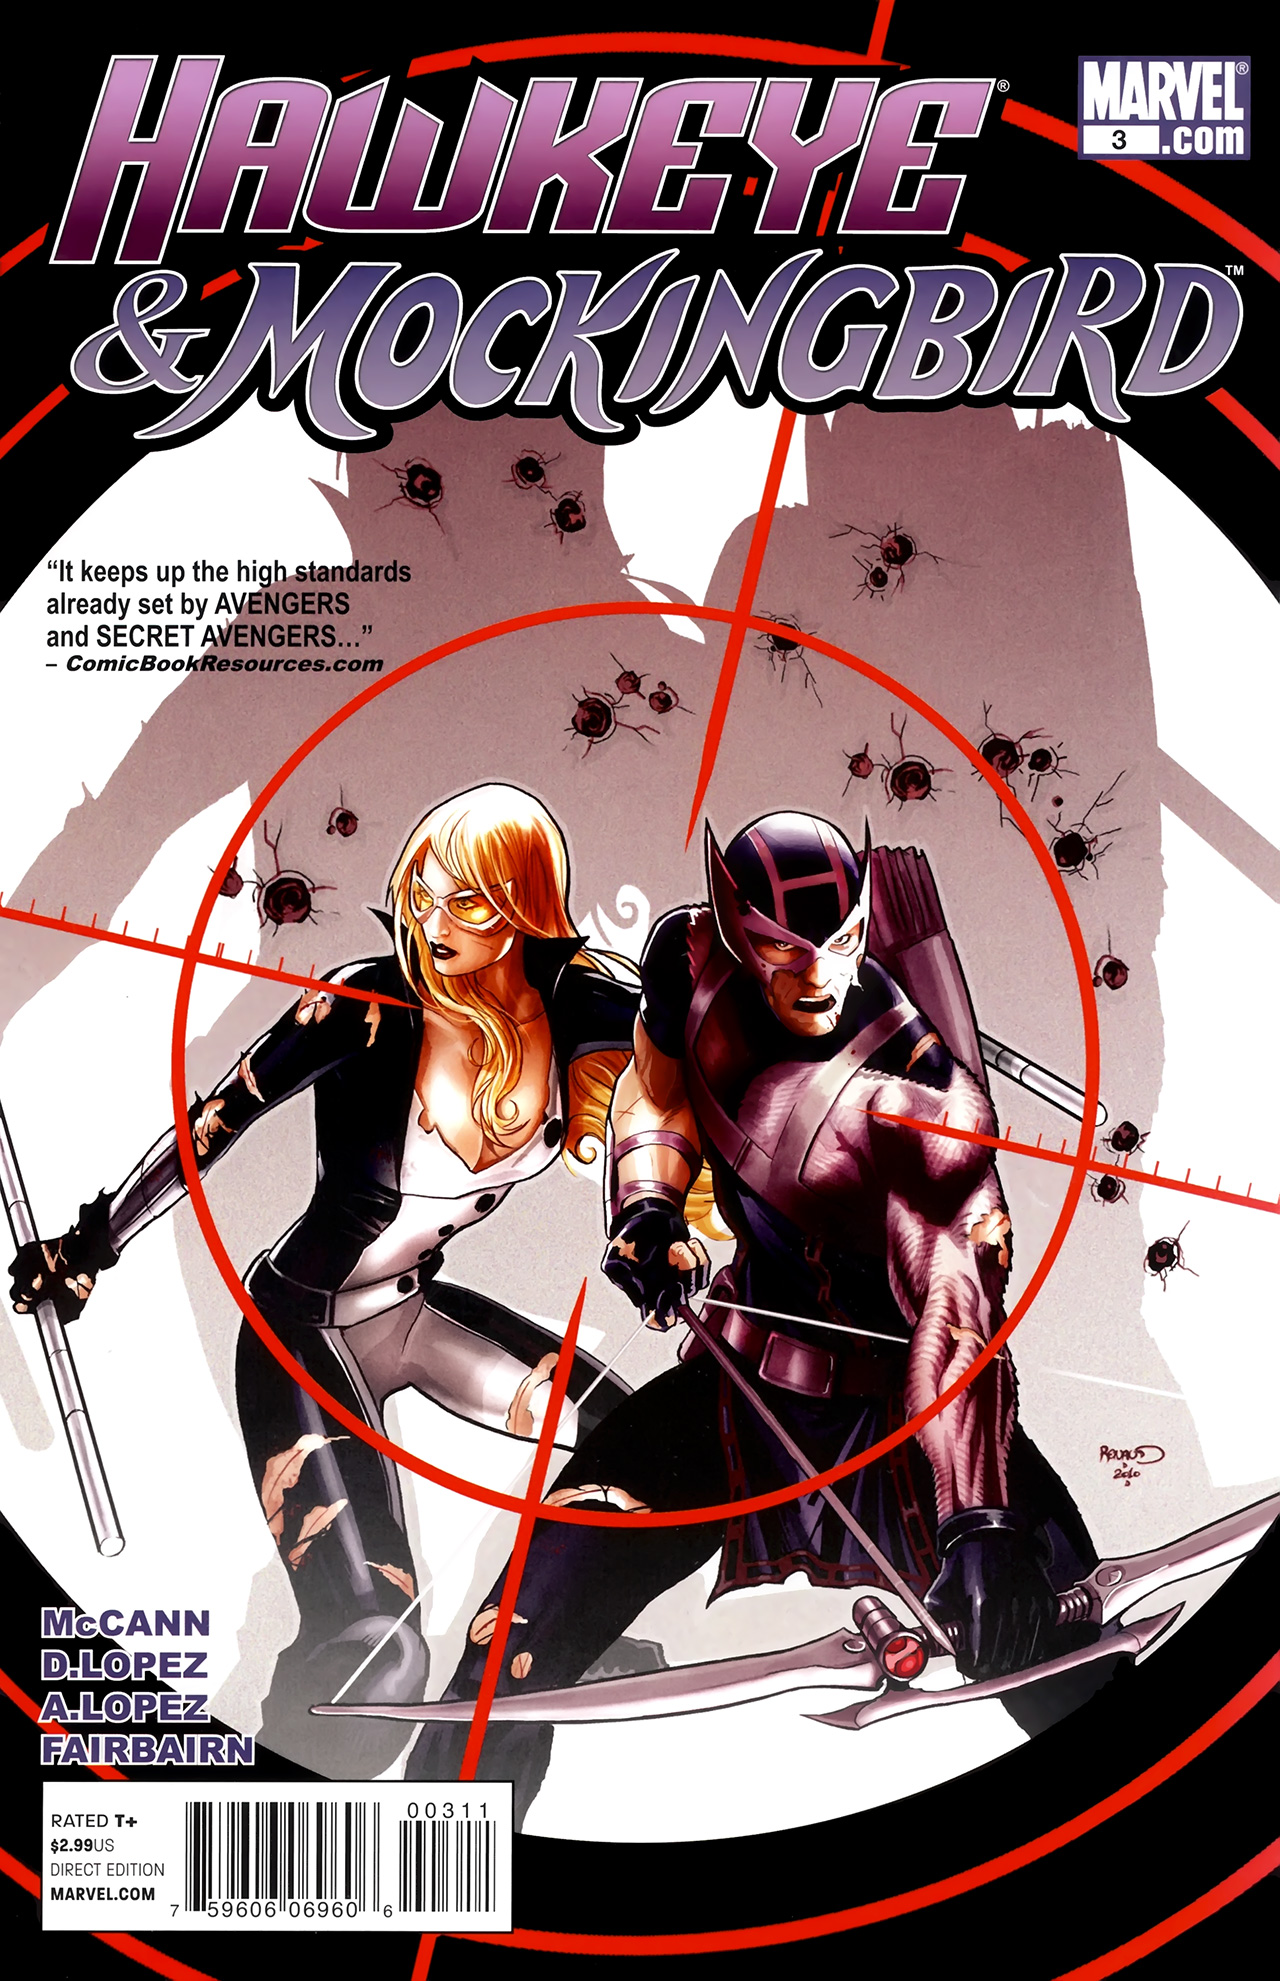 Read online Hawkeye & Mockingbird comic -  Issue #3 - 1